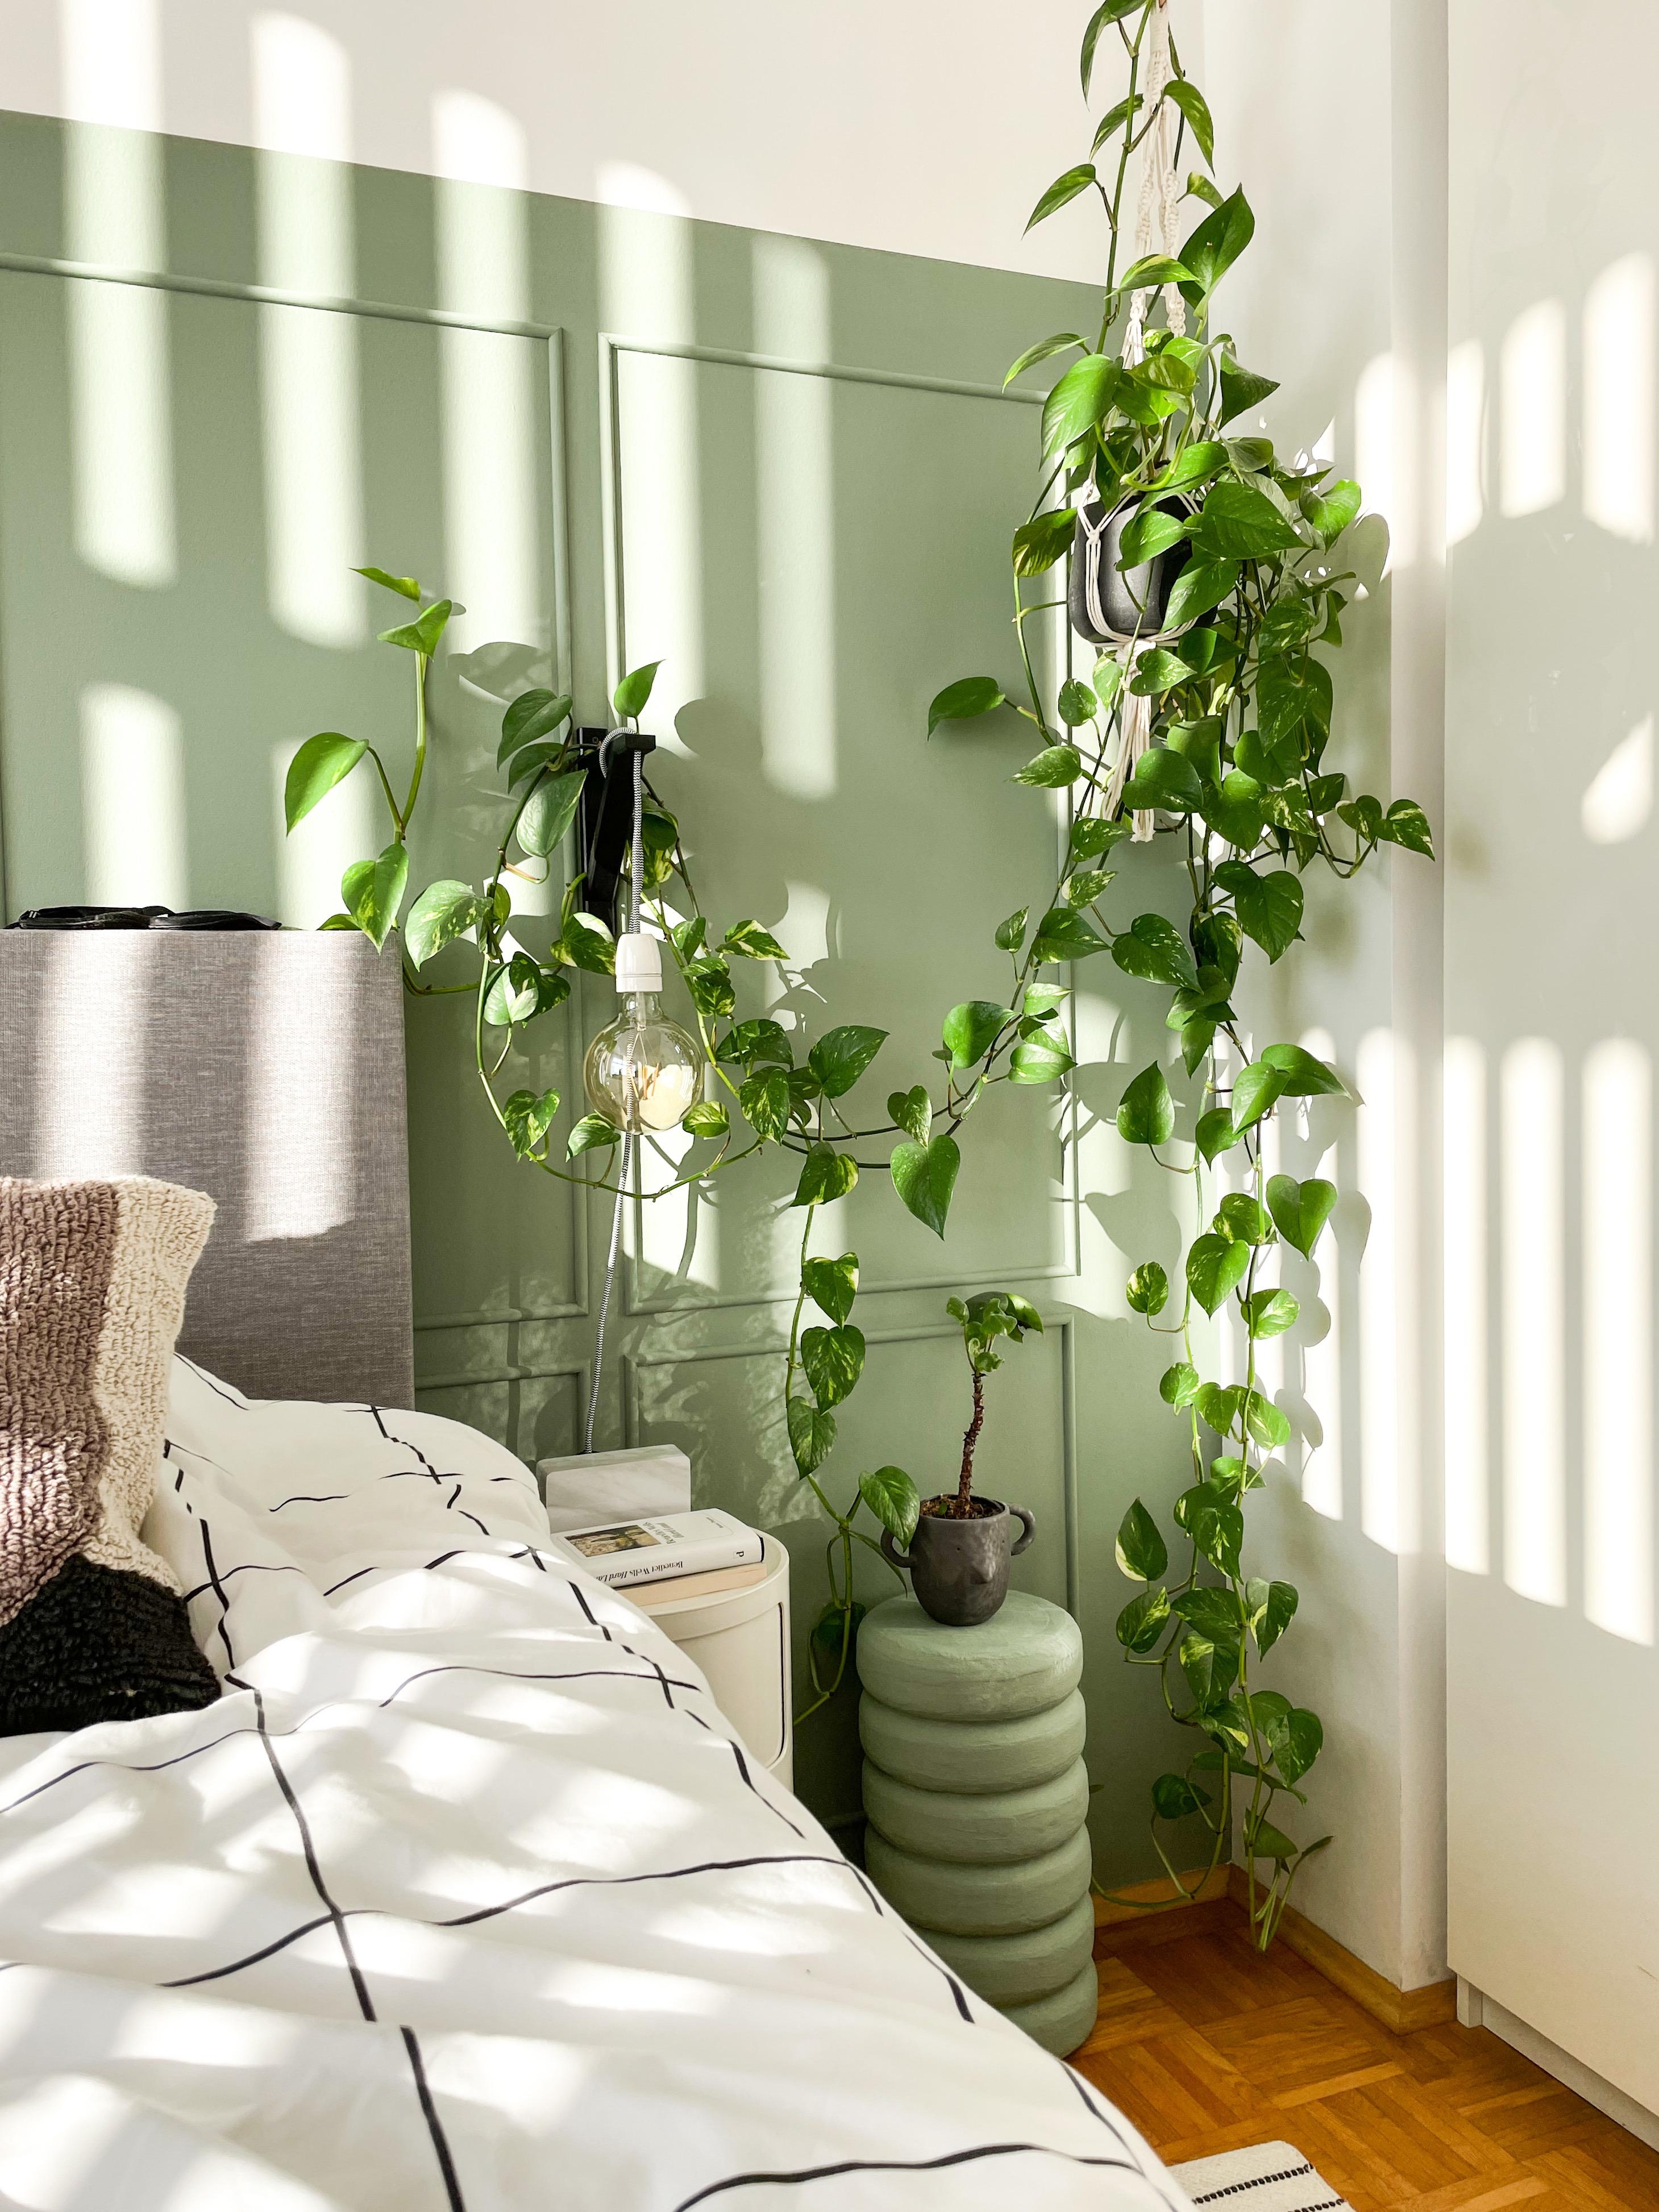 Sunkissed ...

#Schlafzimmer #Pflanzen #Bett #Sonnenstrahlen #urbanjungle